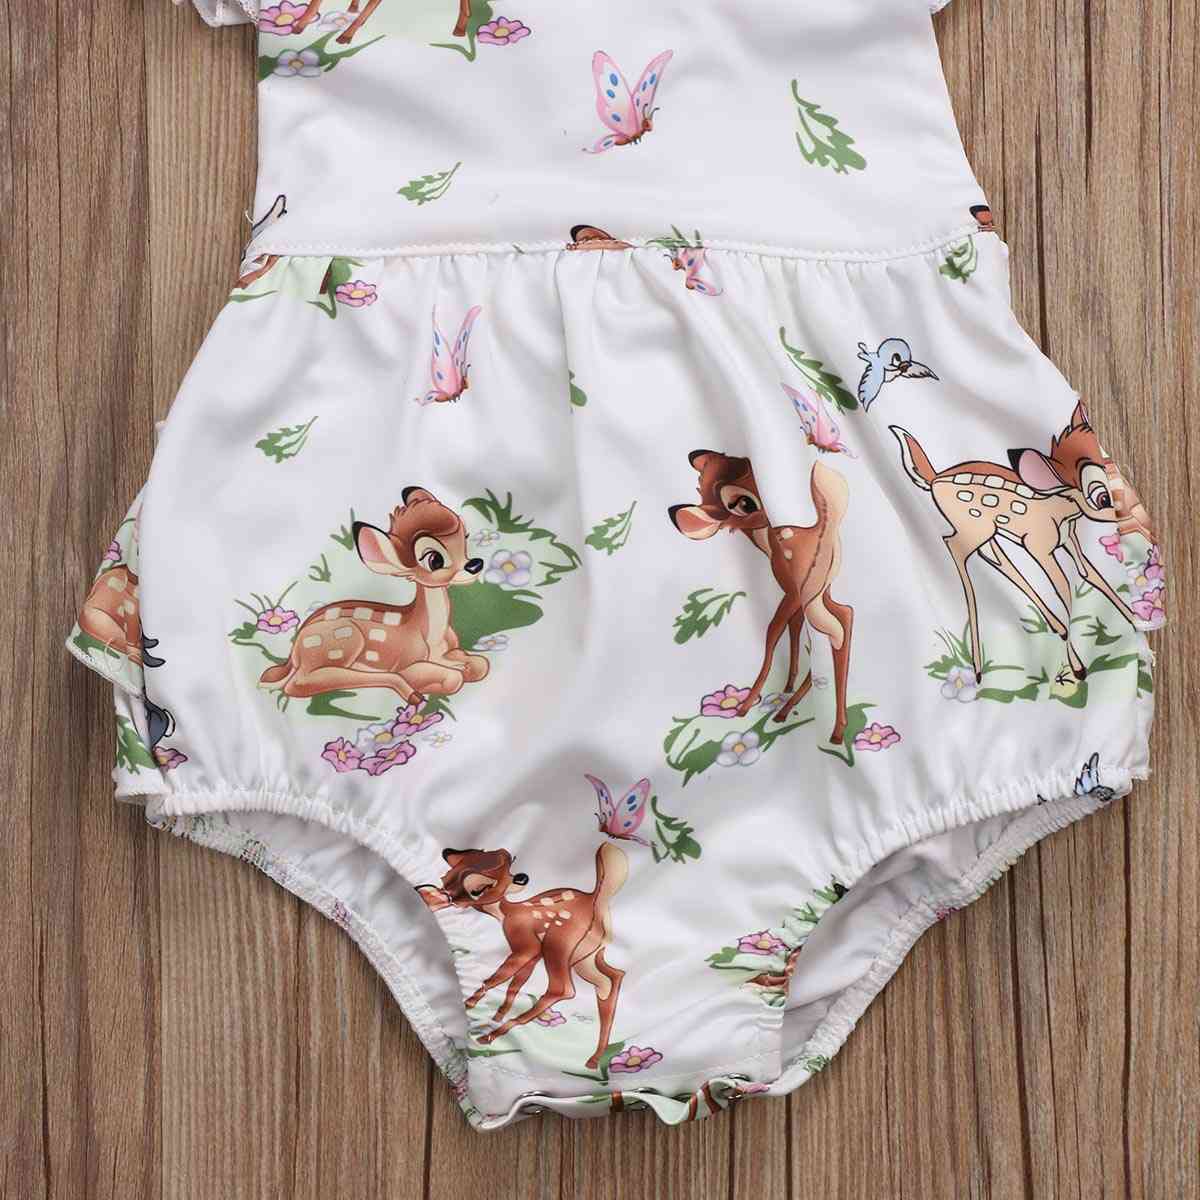 Moda neonato bambino neonato neonate cervo increspature pagliaccetto tuta vestiti abiti - 6m